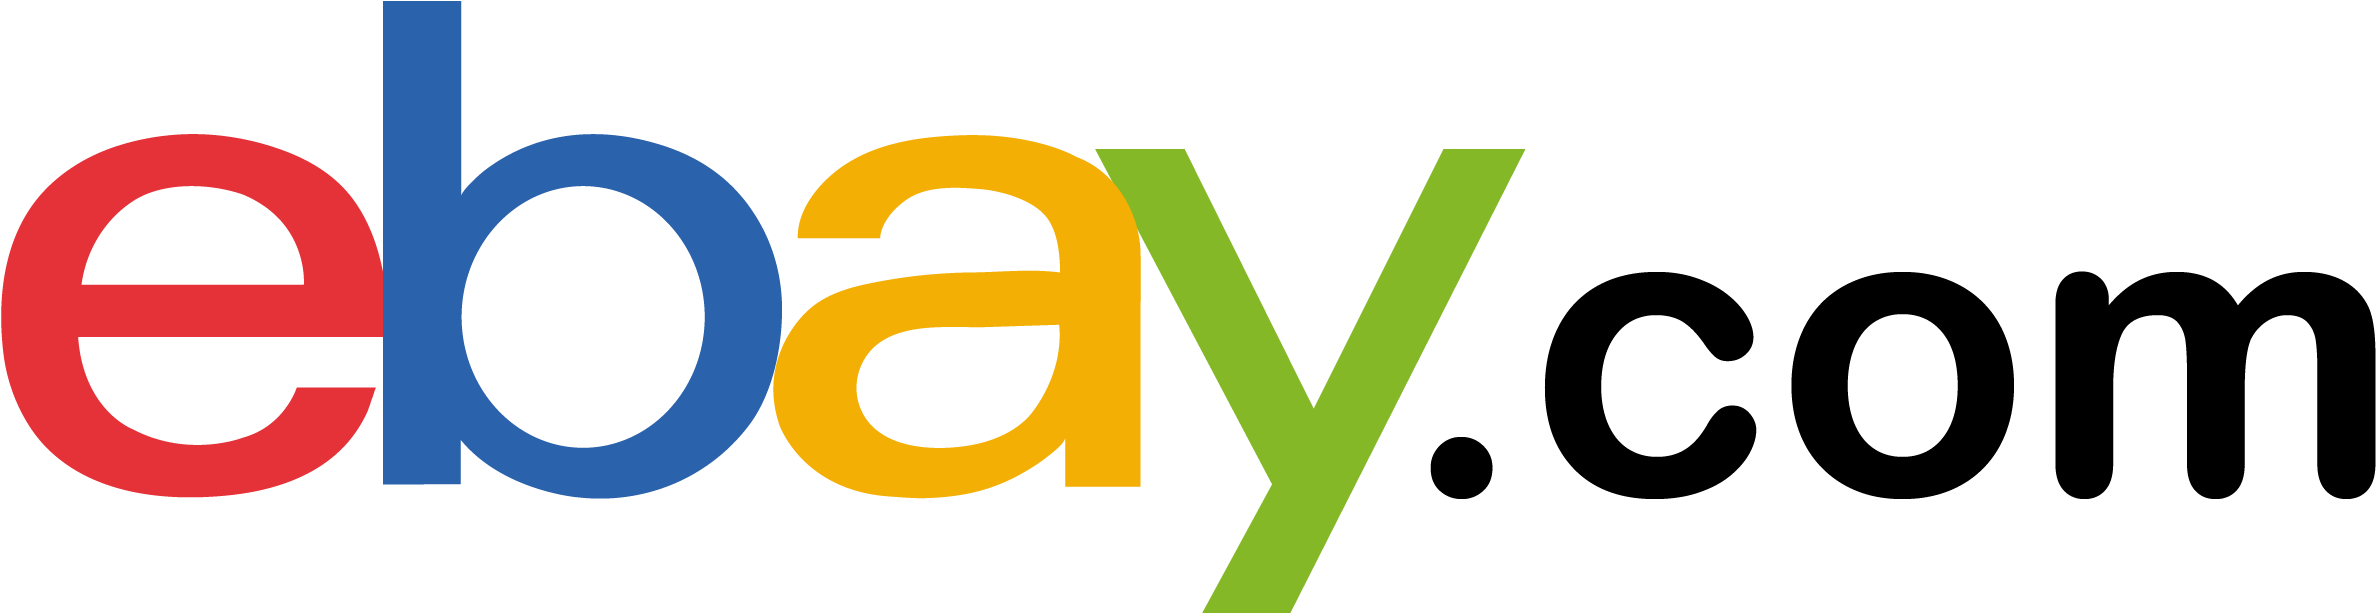 Ebay logo PNG Transparentes Bild